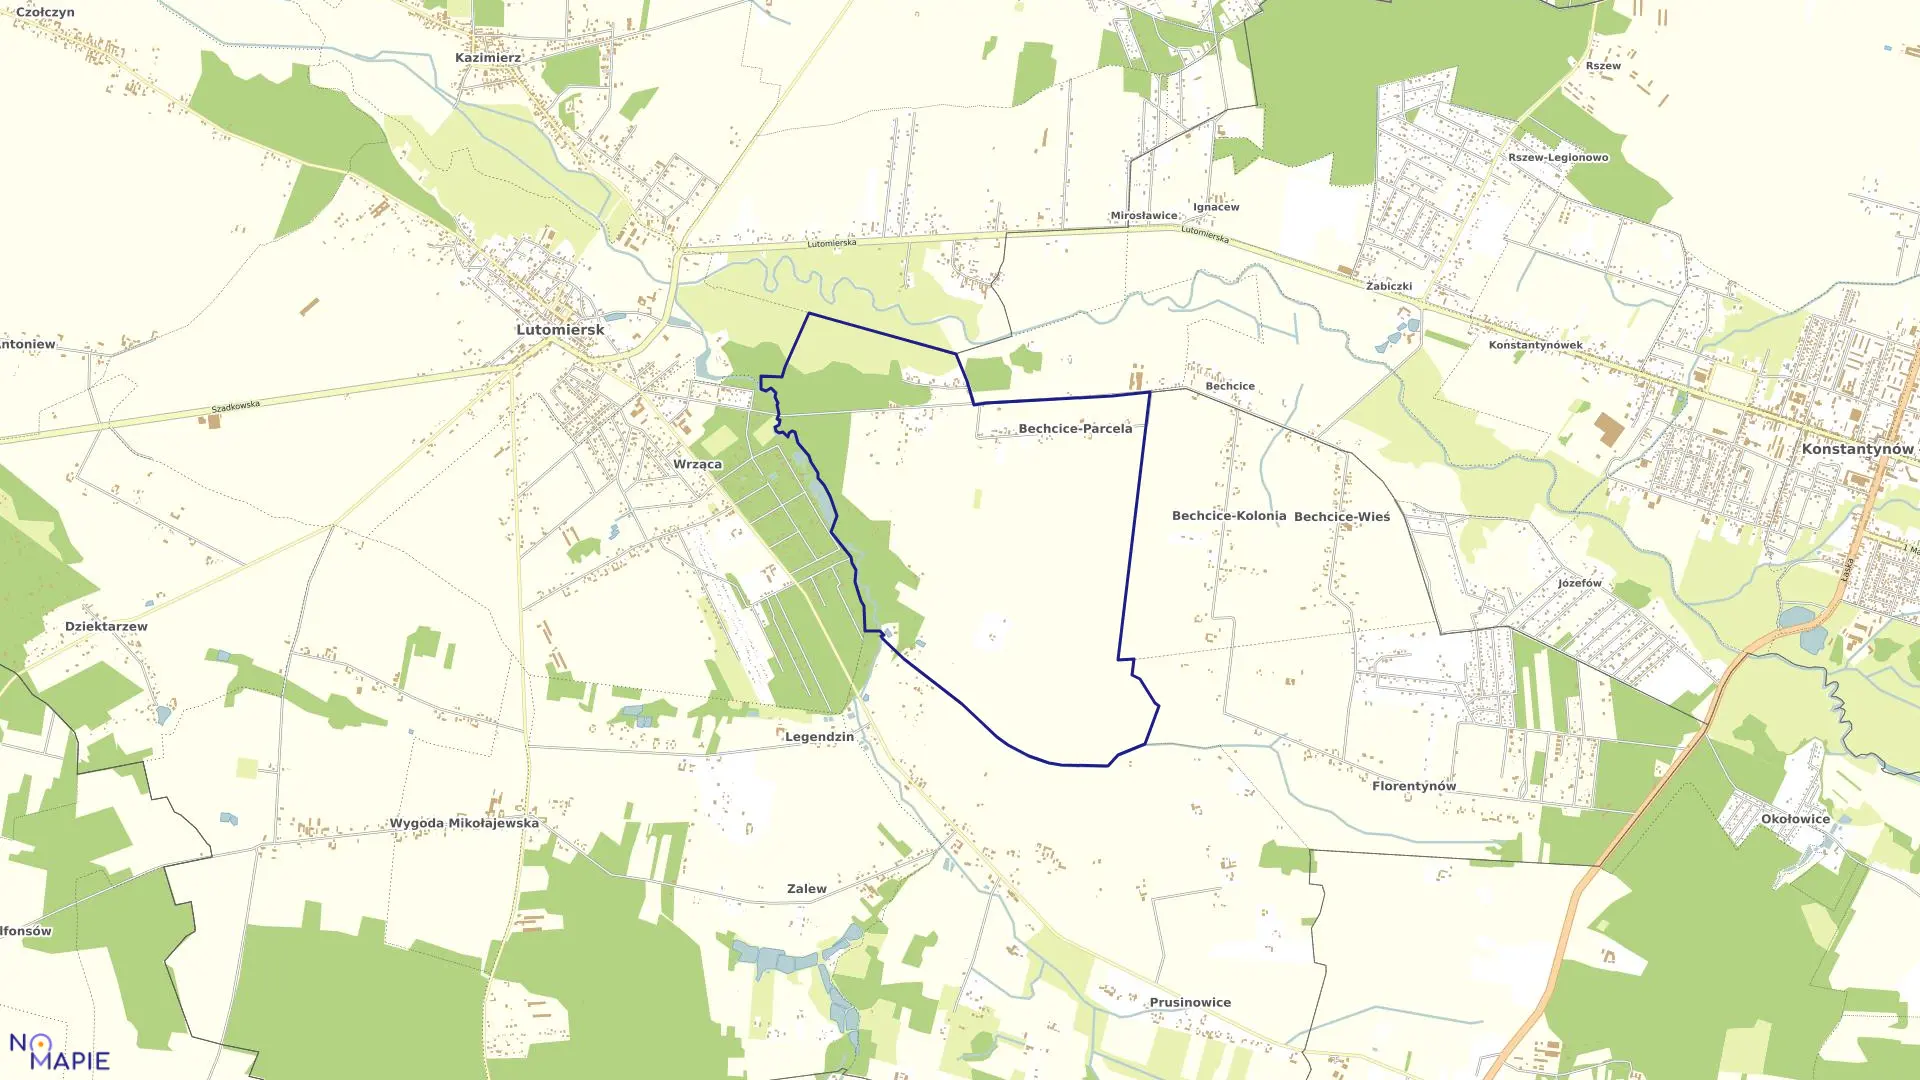 Mapa obrębu KOLONIA BECHCICE w gminie Lutomiersk